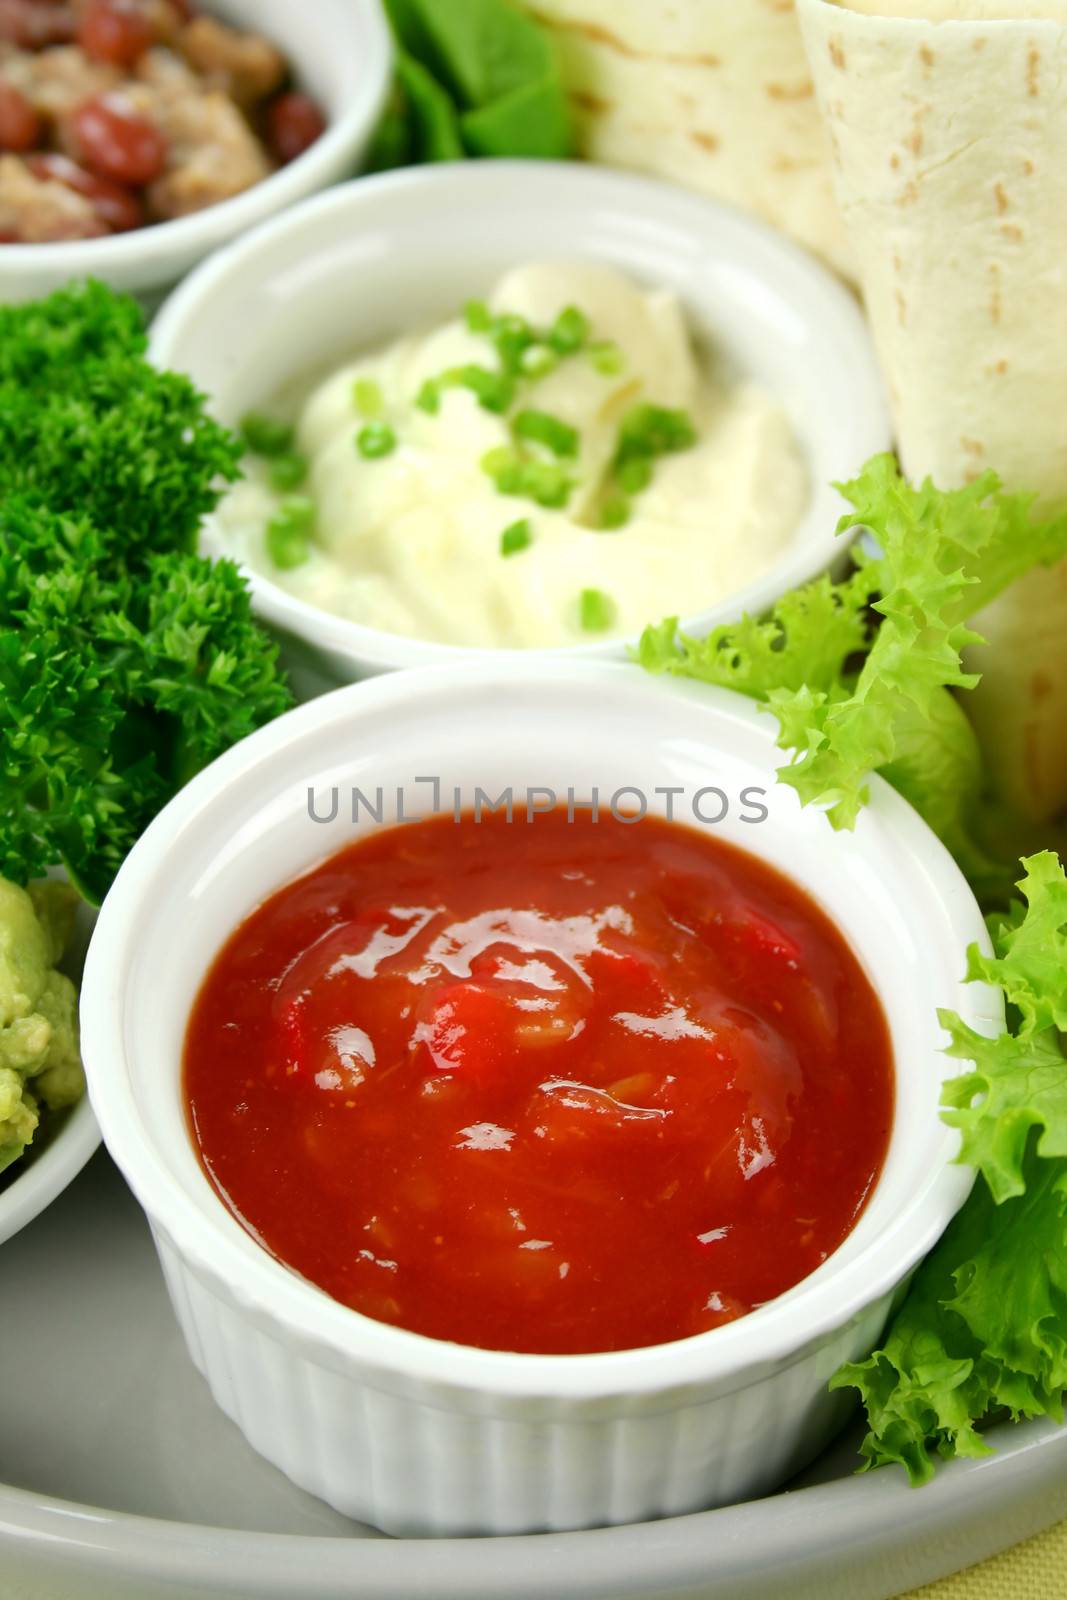 Tomato Salsa And Sour Cream by jabiru